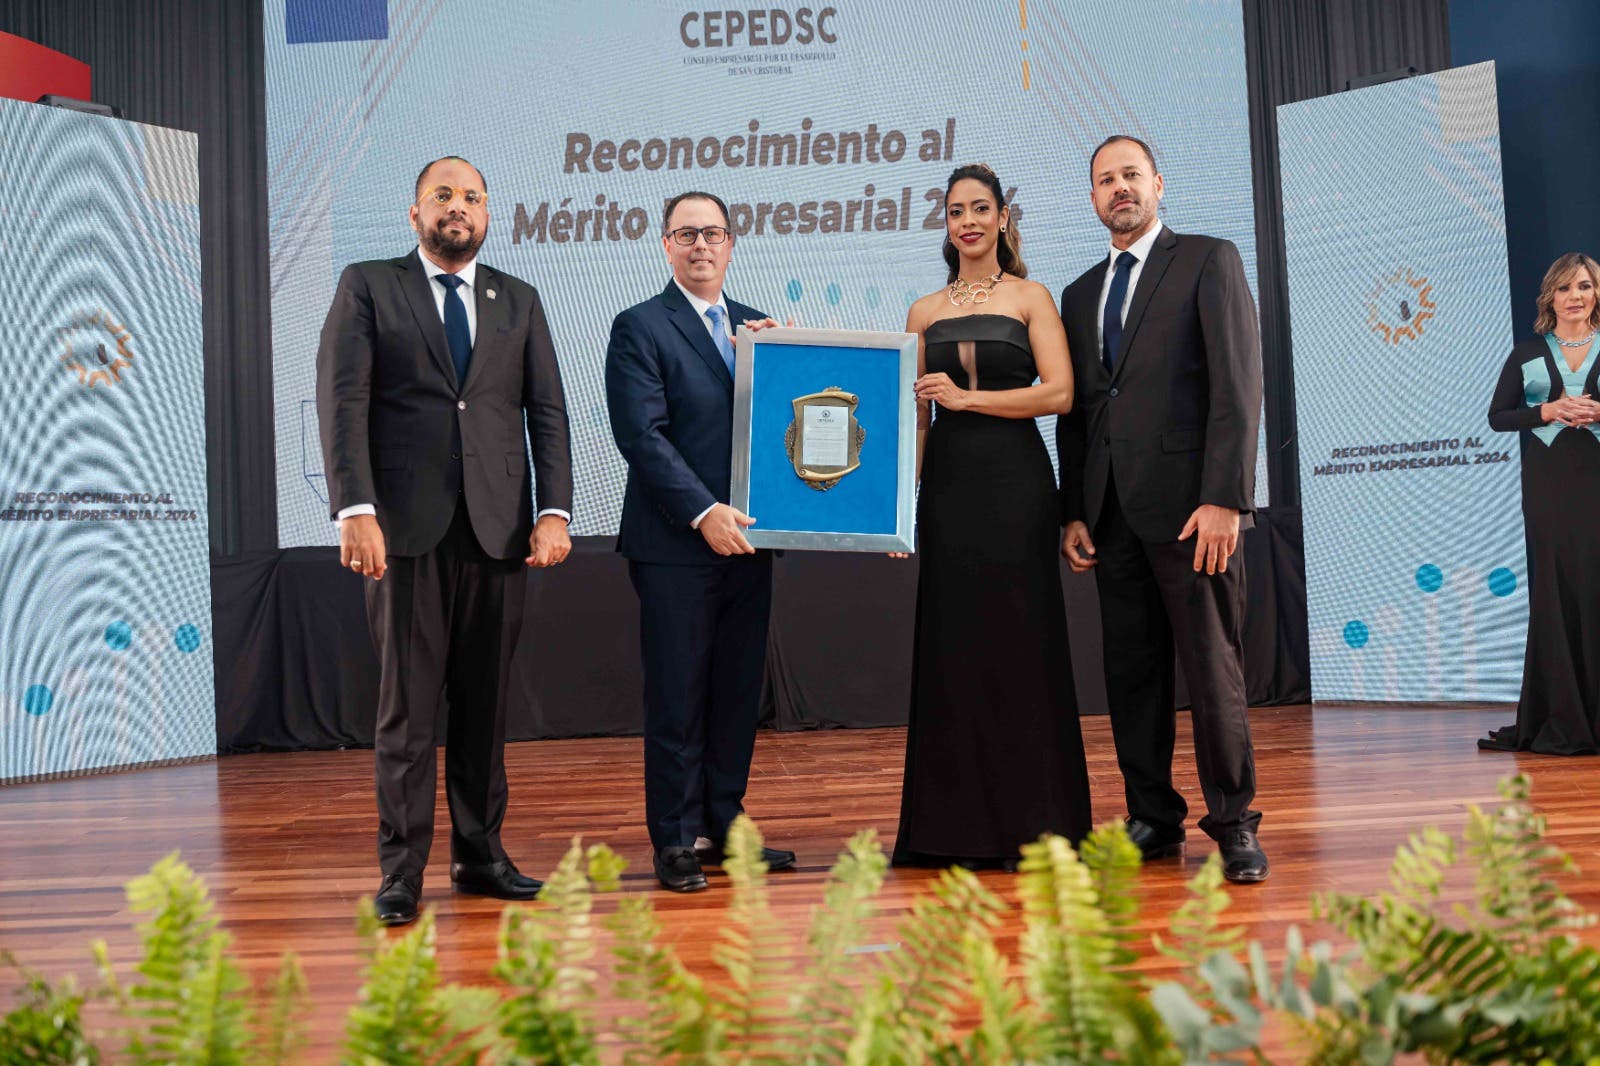 Banco Popular es reconocido por el Consejo Empresarial por el Desarrollo de San Cristóbal